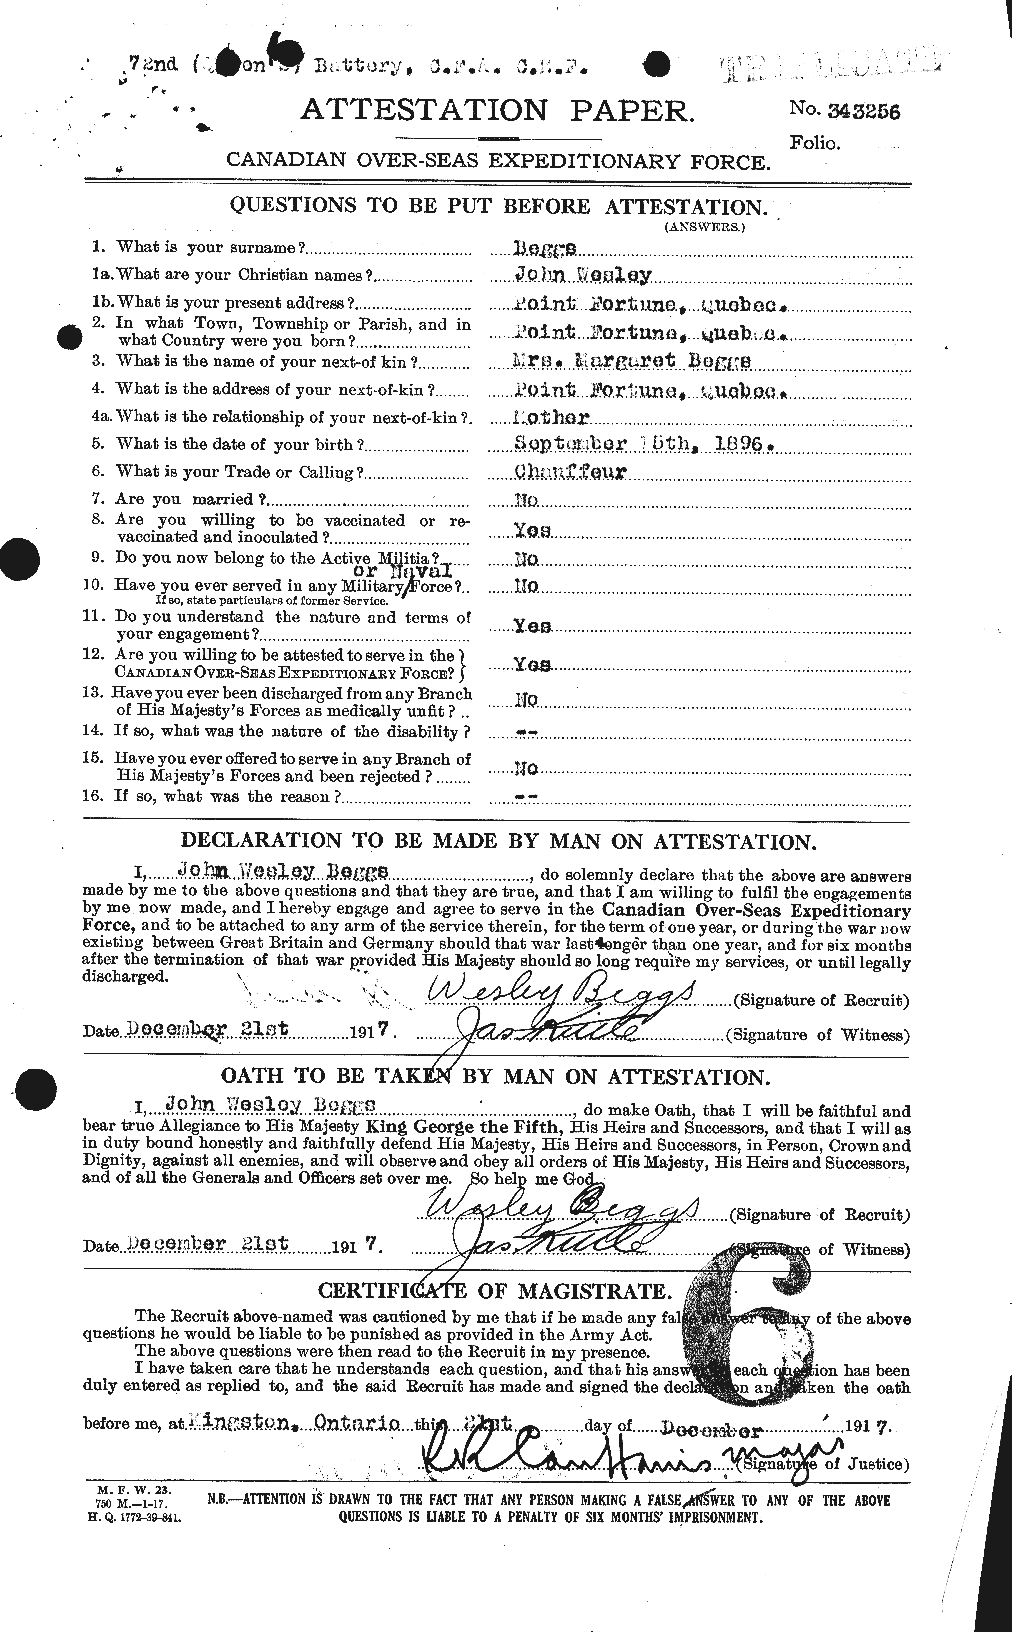 Dossiers du Personnel de la Première Guerre mondiale - CEC 232380a